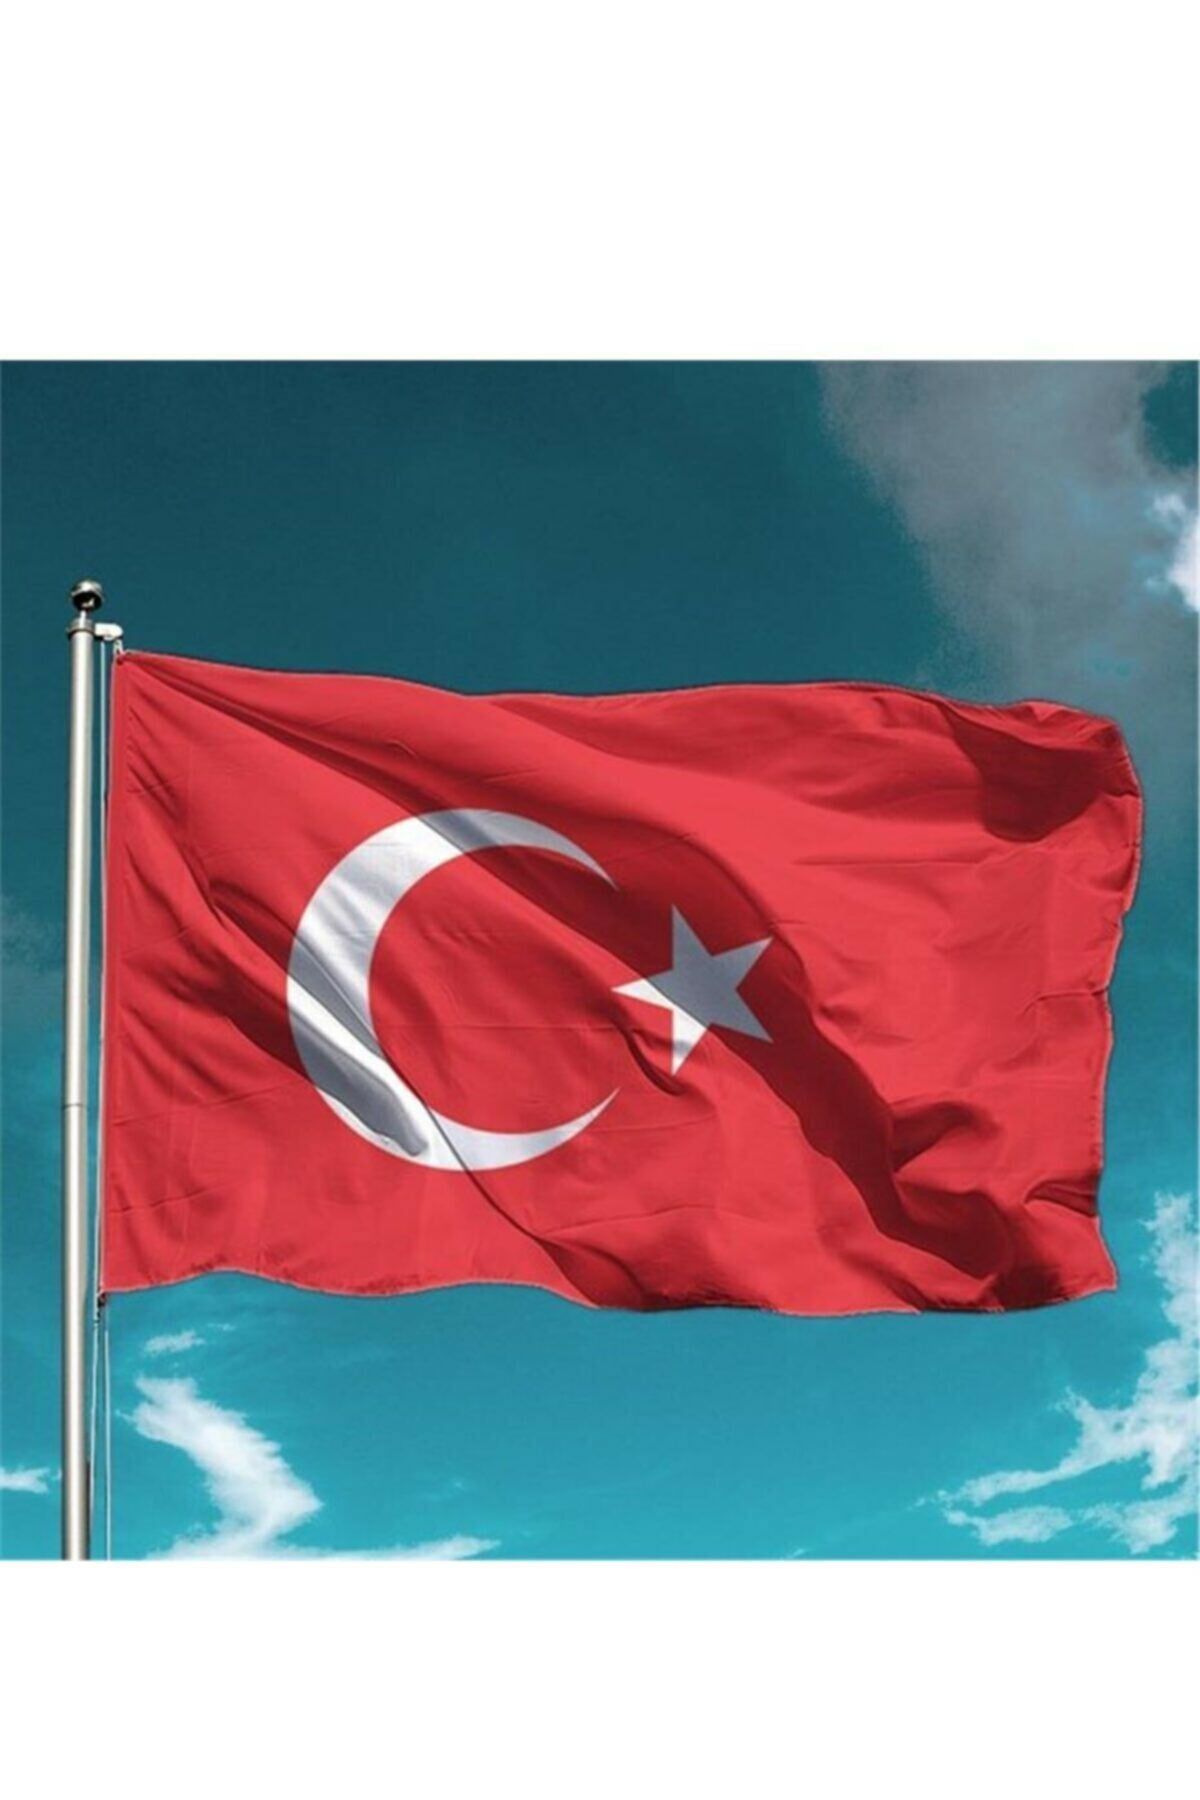 Vatan Türk Bayrağı 80 x 120 cm